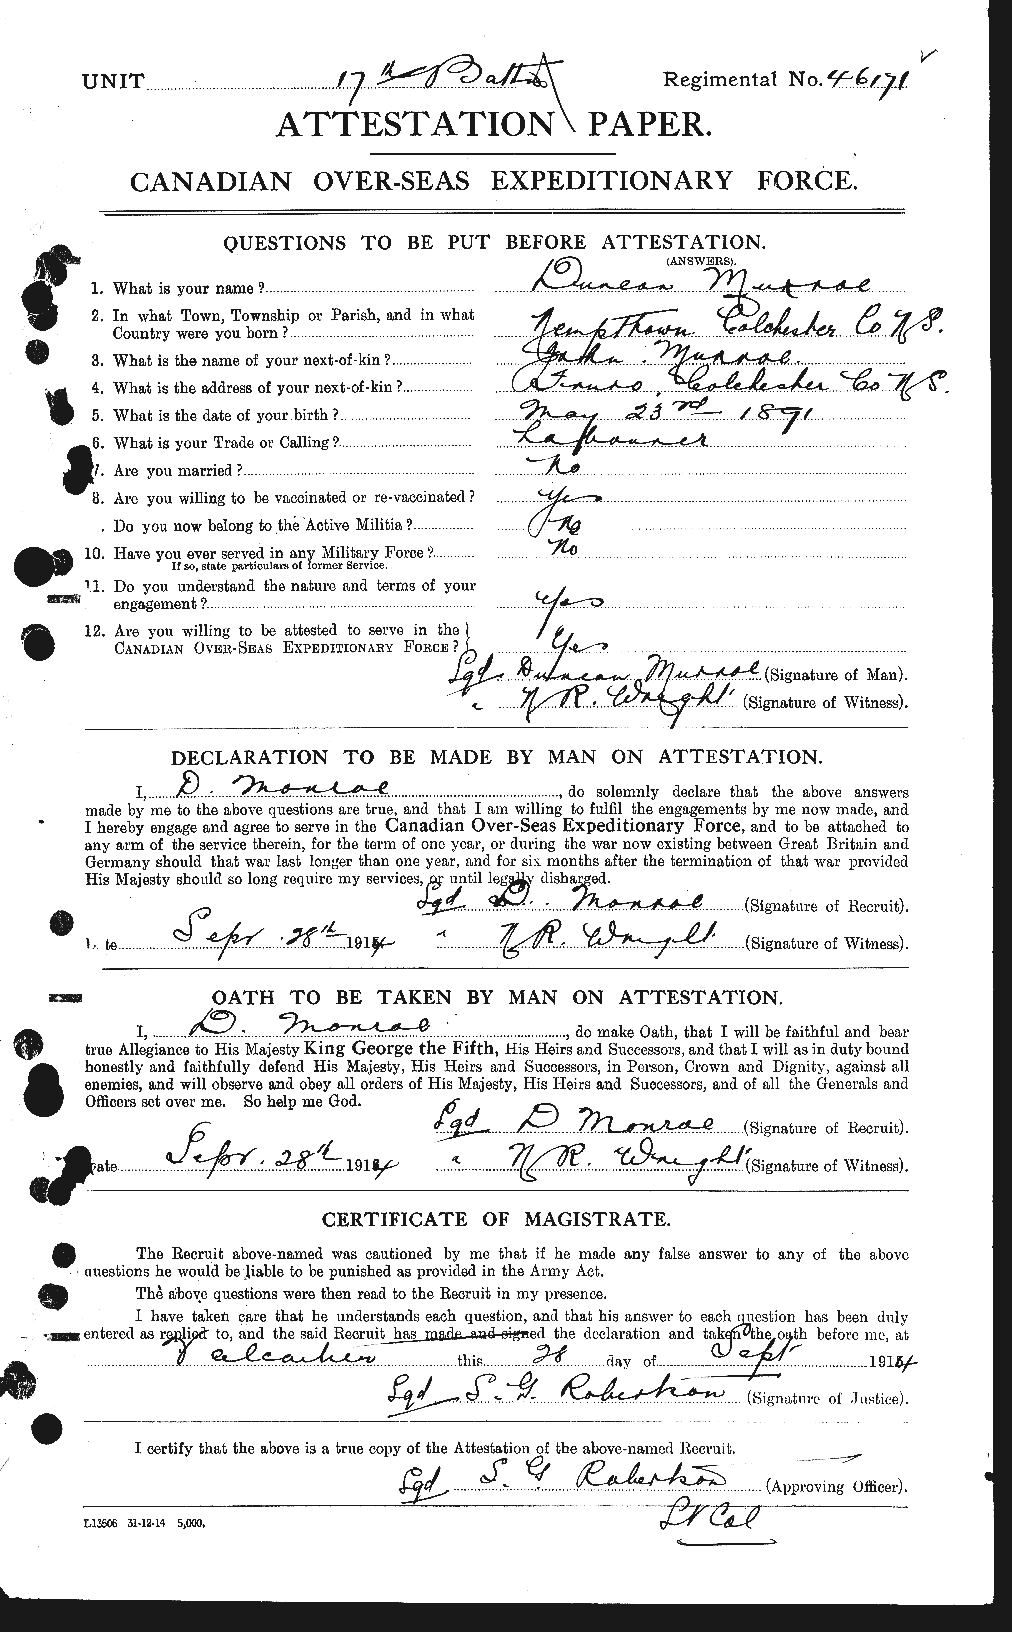 Dossiers du Personnel de la Première Guerre mondiale - CEC 515490a